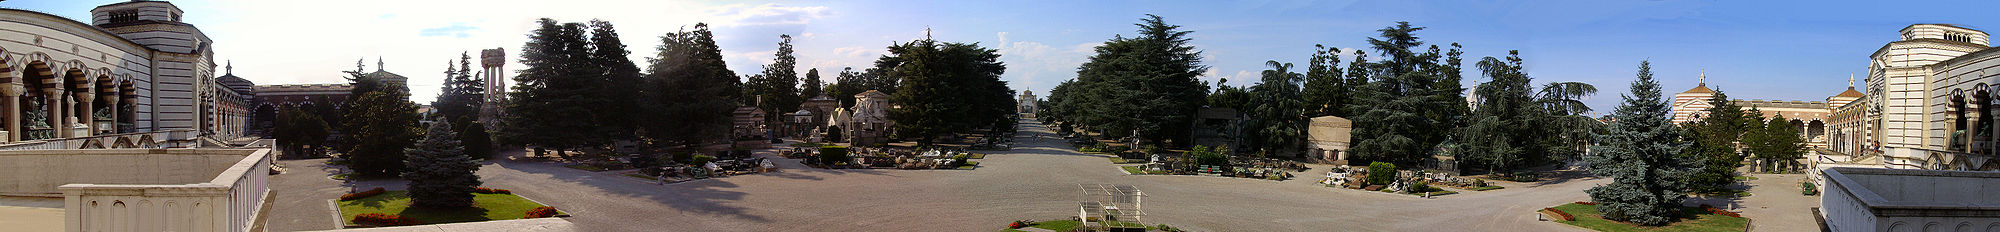 Panoramablick über den Friedhof vom Eingangsgebäude her aufgenommen